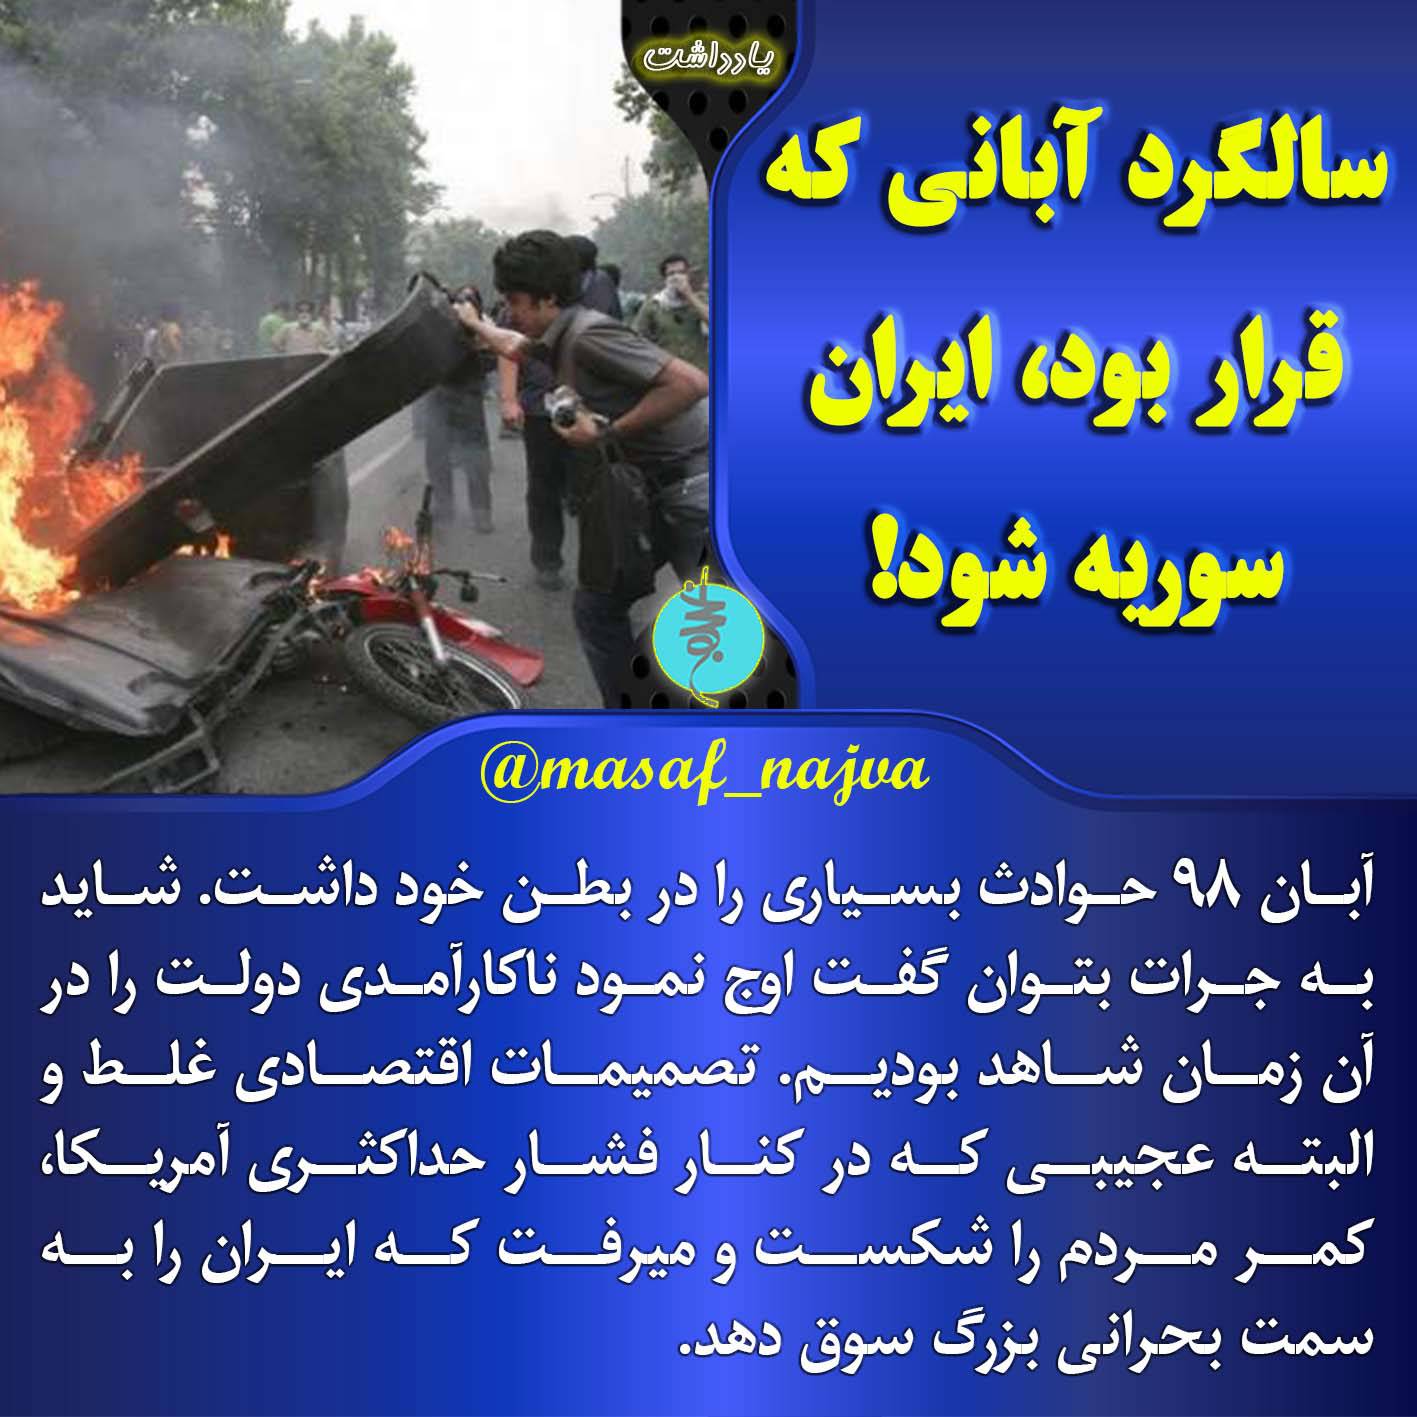 سالگرد آبانی که قرار بود، ایران سوریه شود!